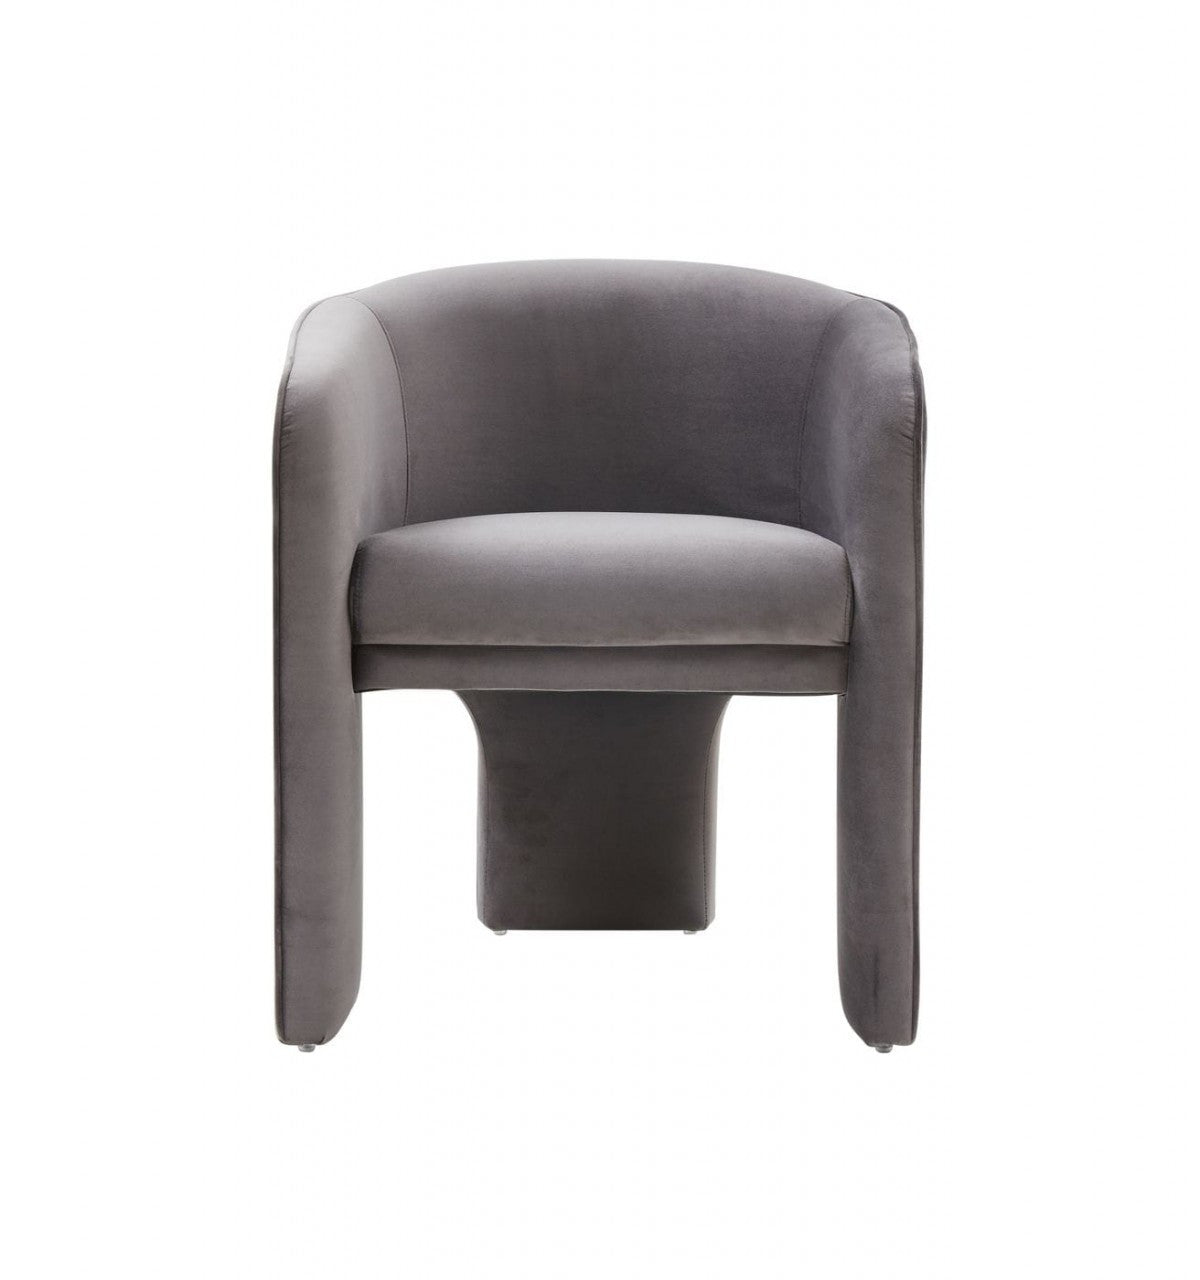 Modrest Kyle Modern Dark Grey Accent Chair